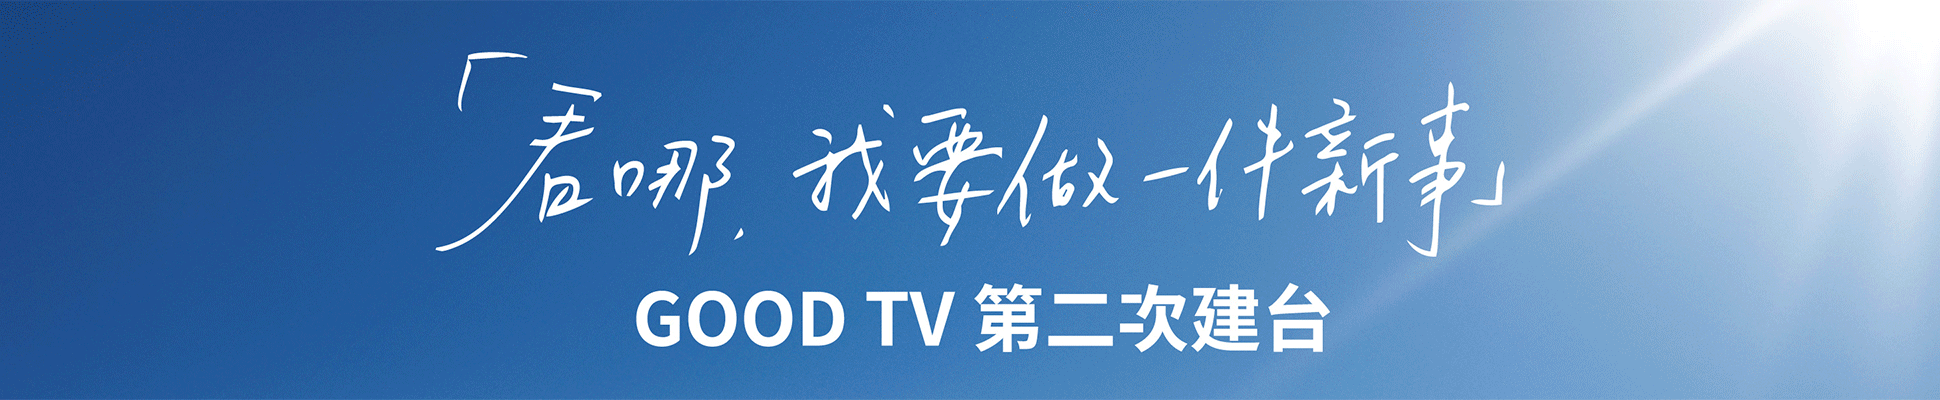 #71214 財團法人加百列福音傳播基金會GOODTV+(5/3-16)文章頭